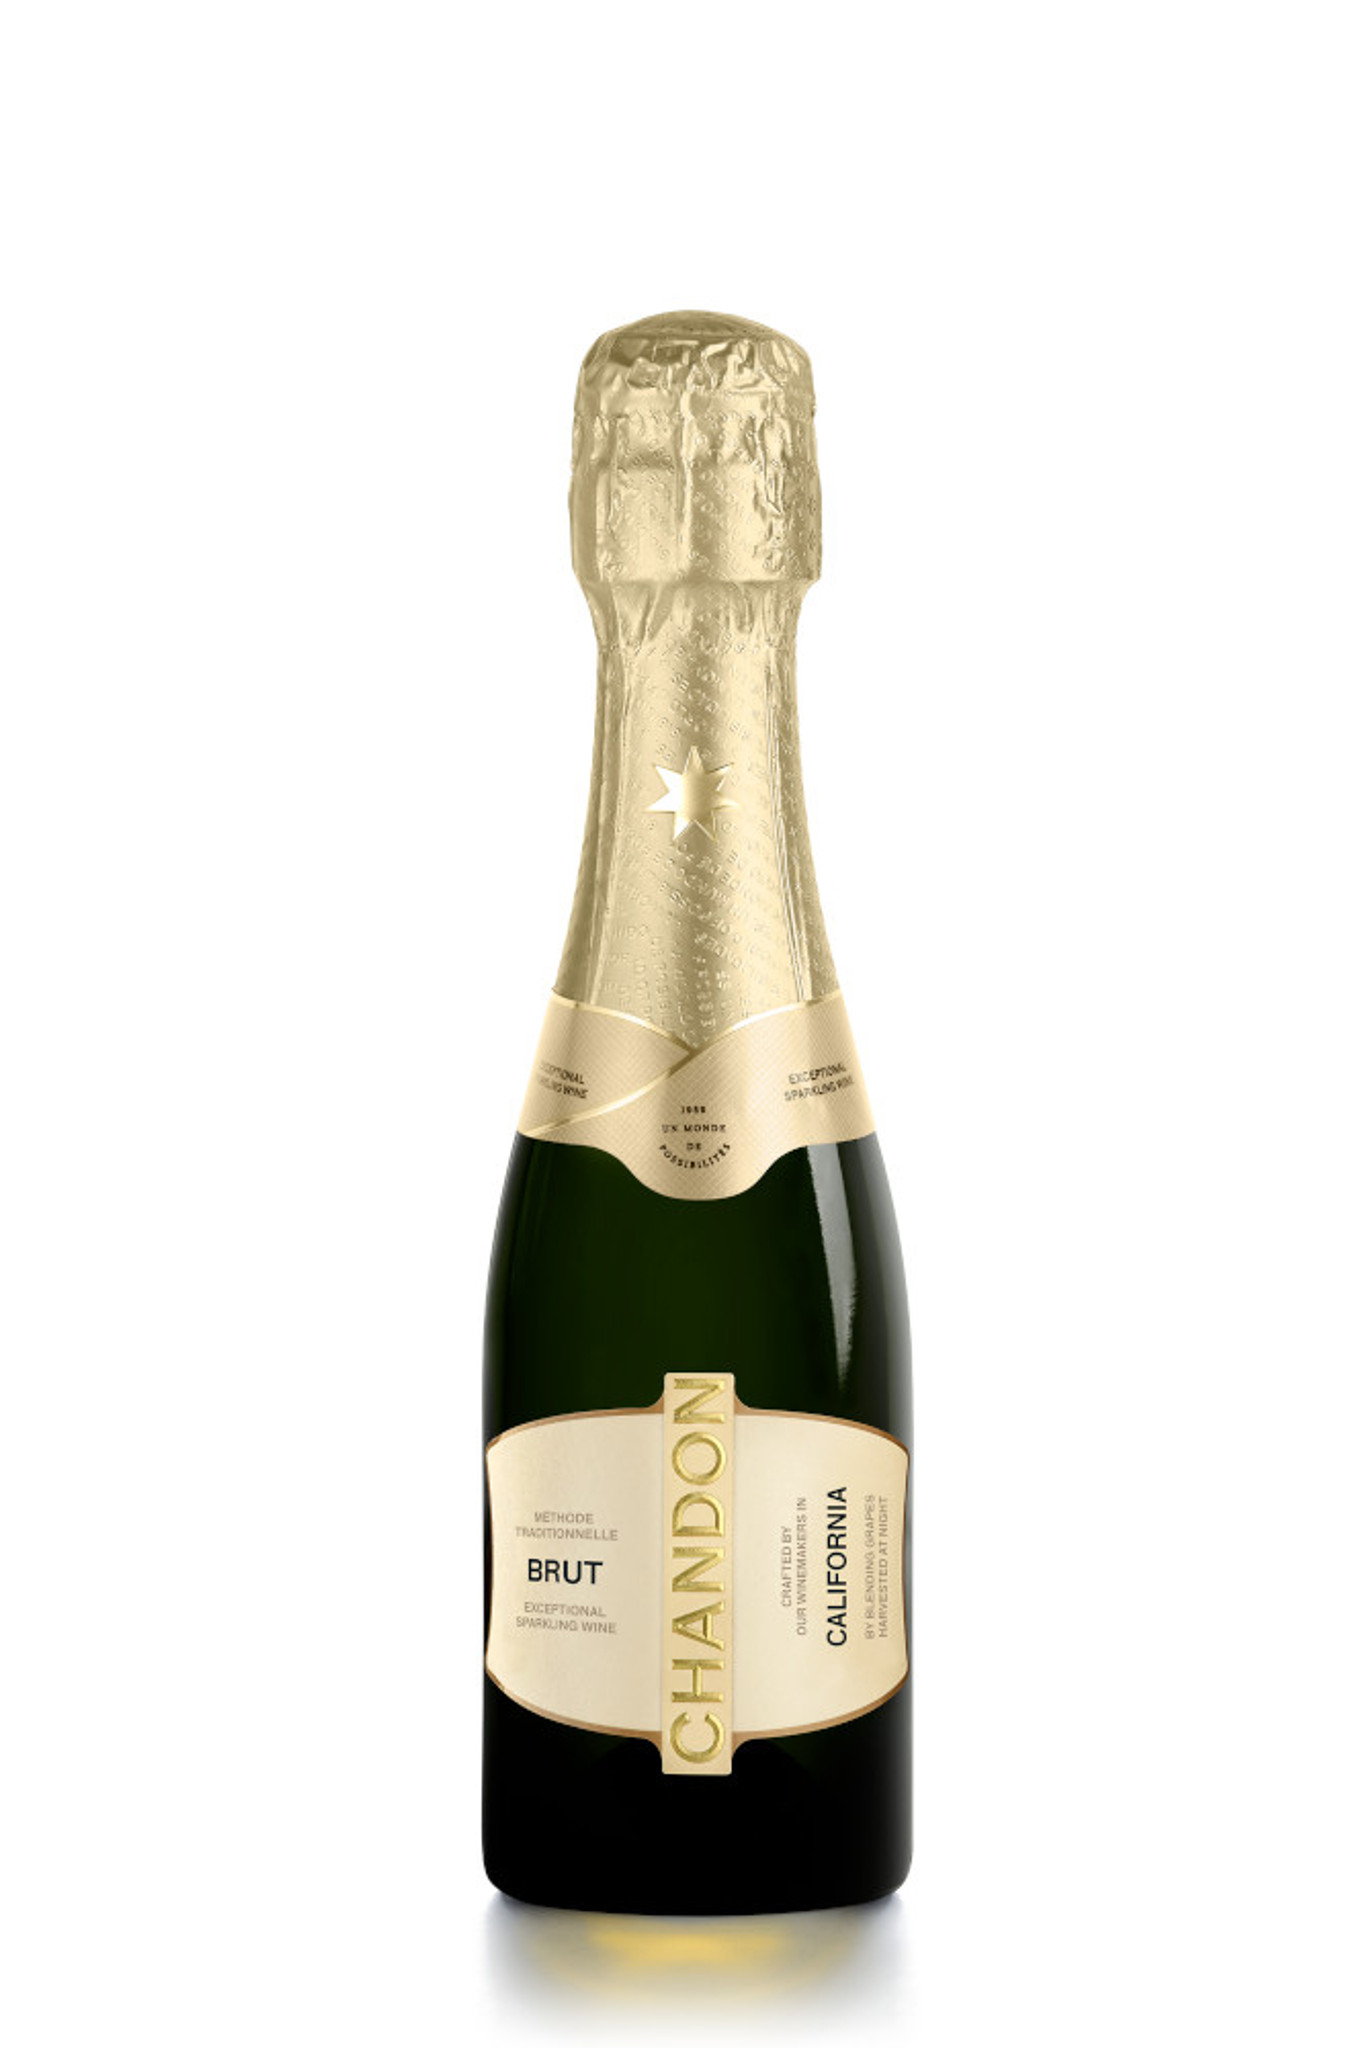 Dom Perignon Brut Champagne - Artale & Co